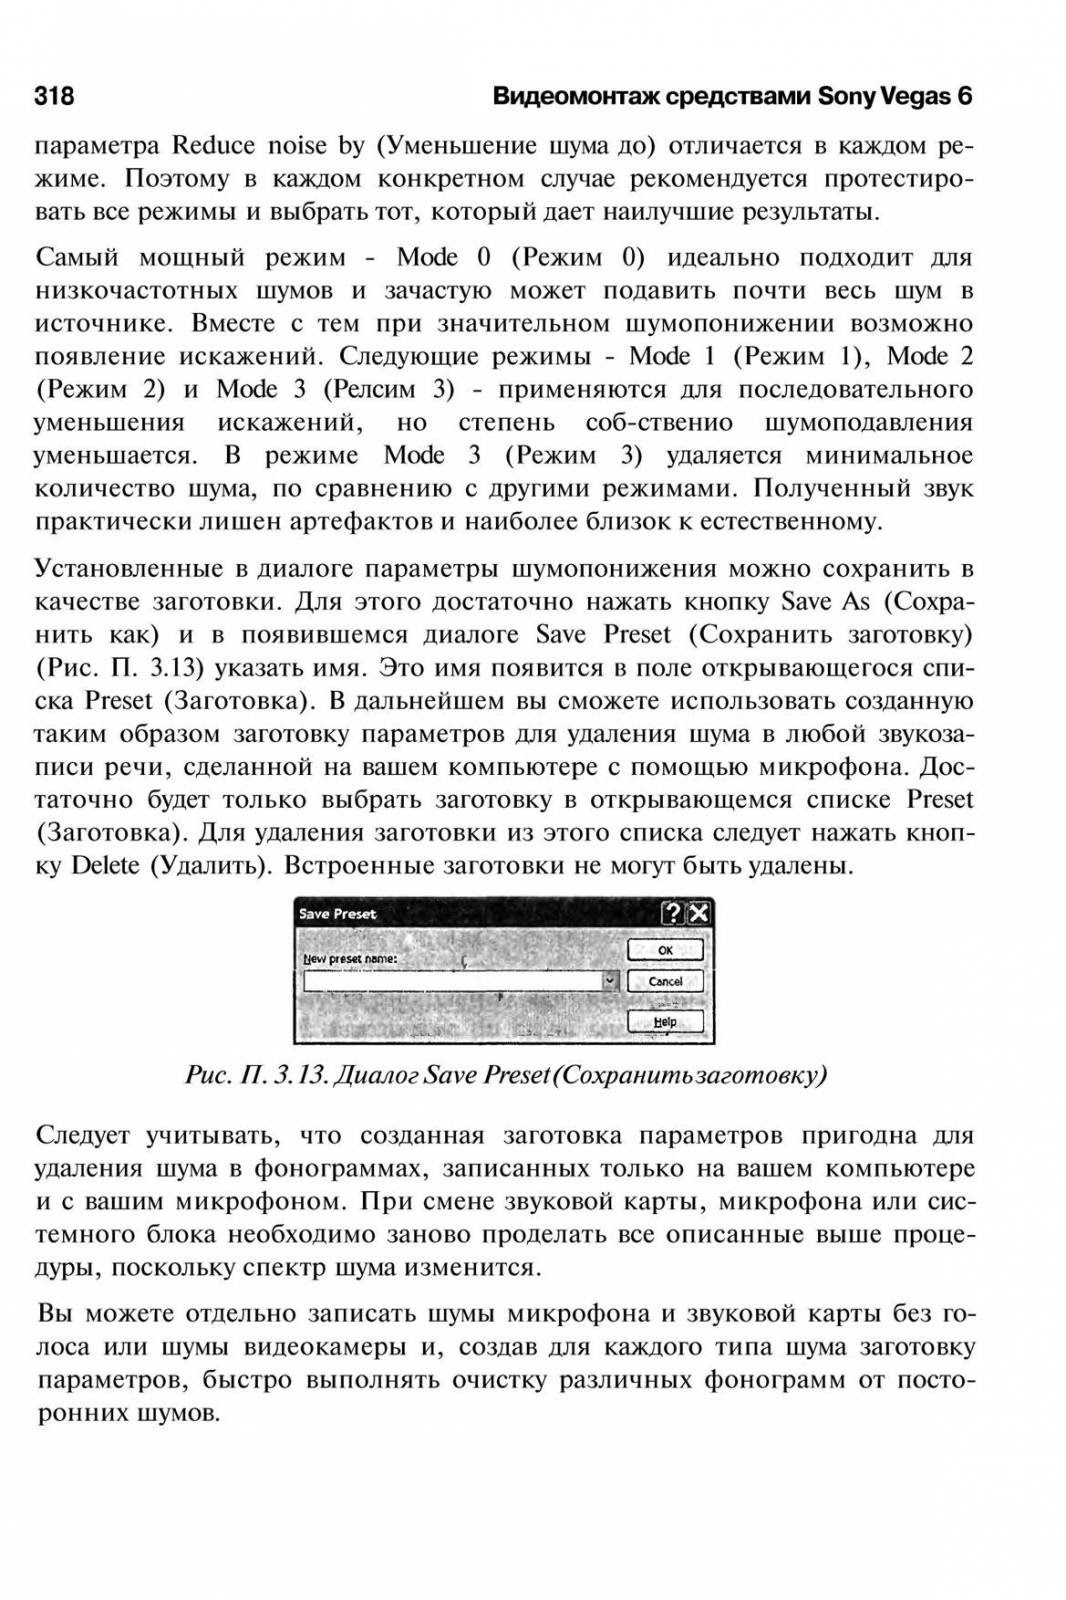 http://redaktori-uroki.3dn.ru/_ph/14/649238162.jpg